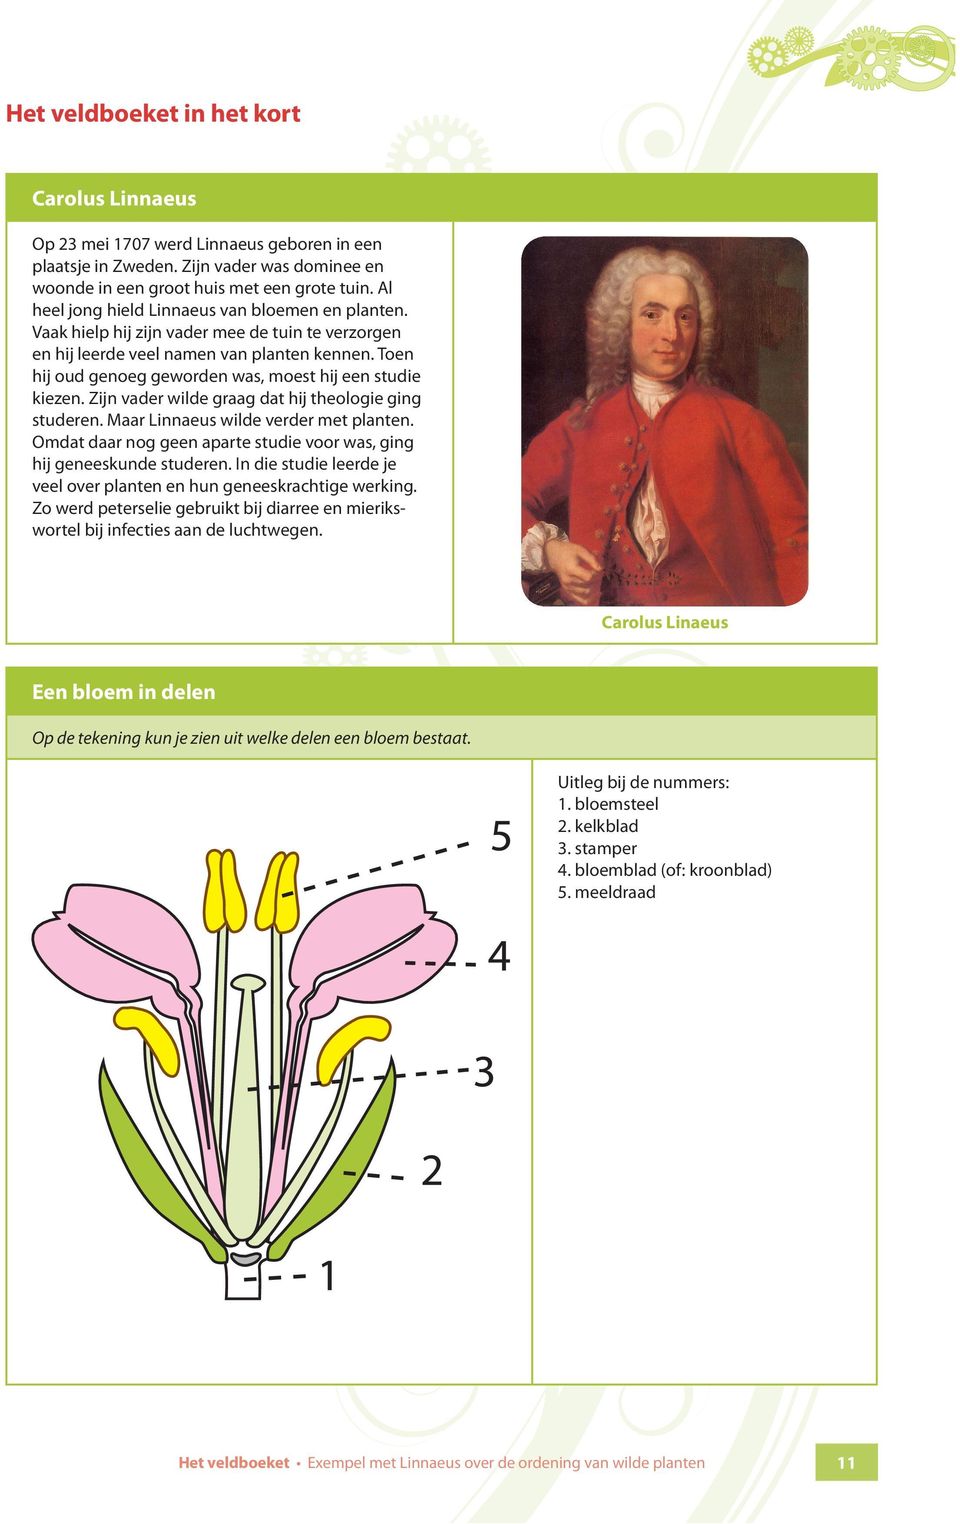 Toen hij oud genoeg geworden was, moest hij een studie kiezen. Zijn vader wilde graag dat hij theologie ging studeren. Maar Linnaeus wilde verder met planten.